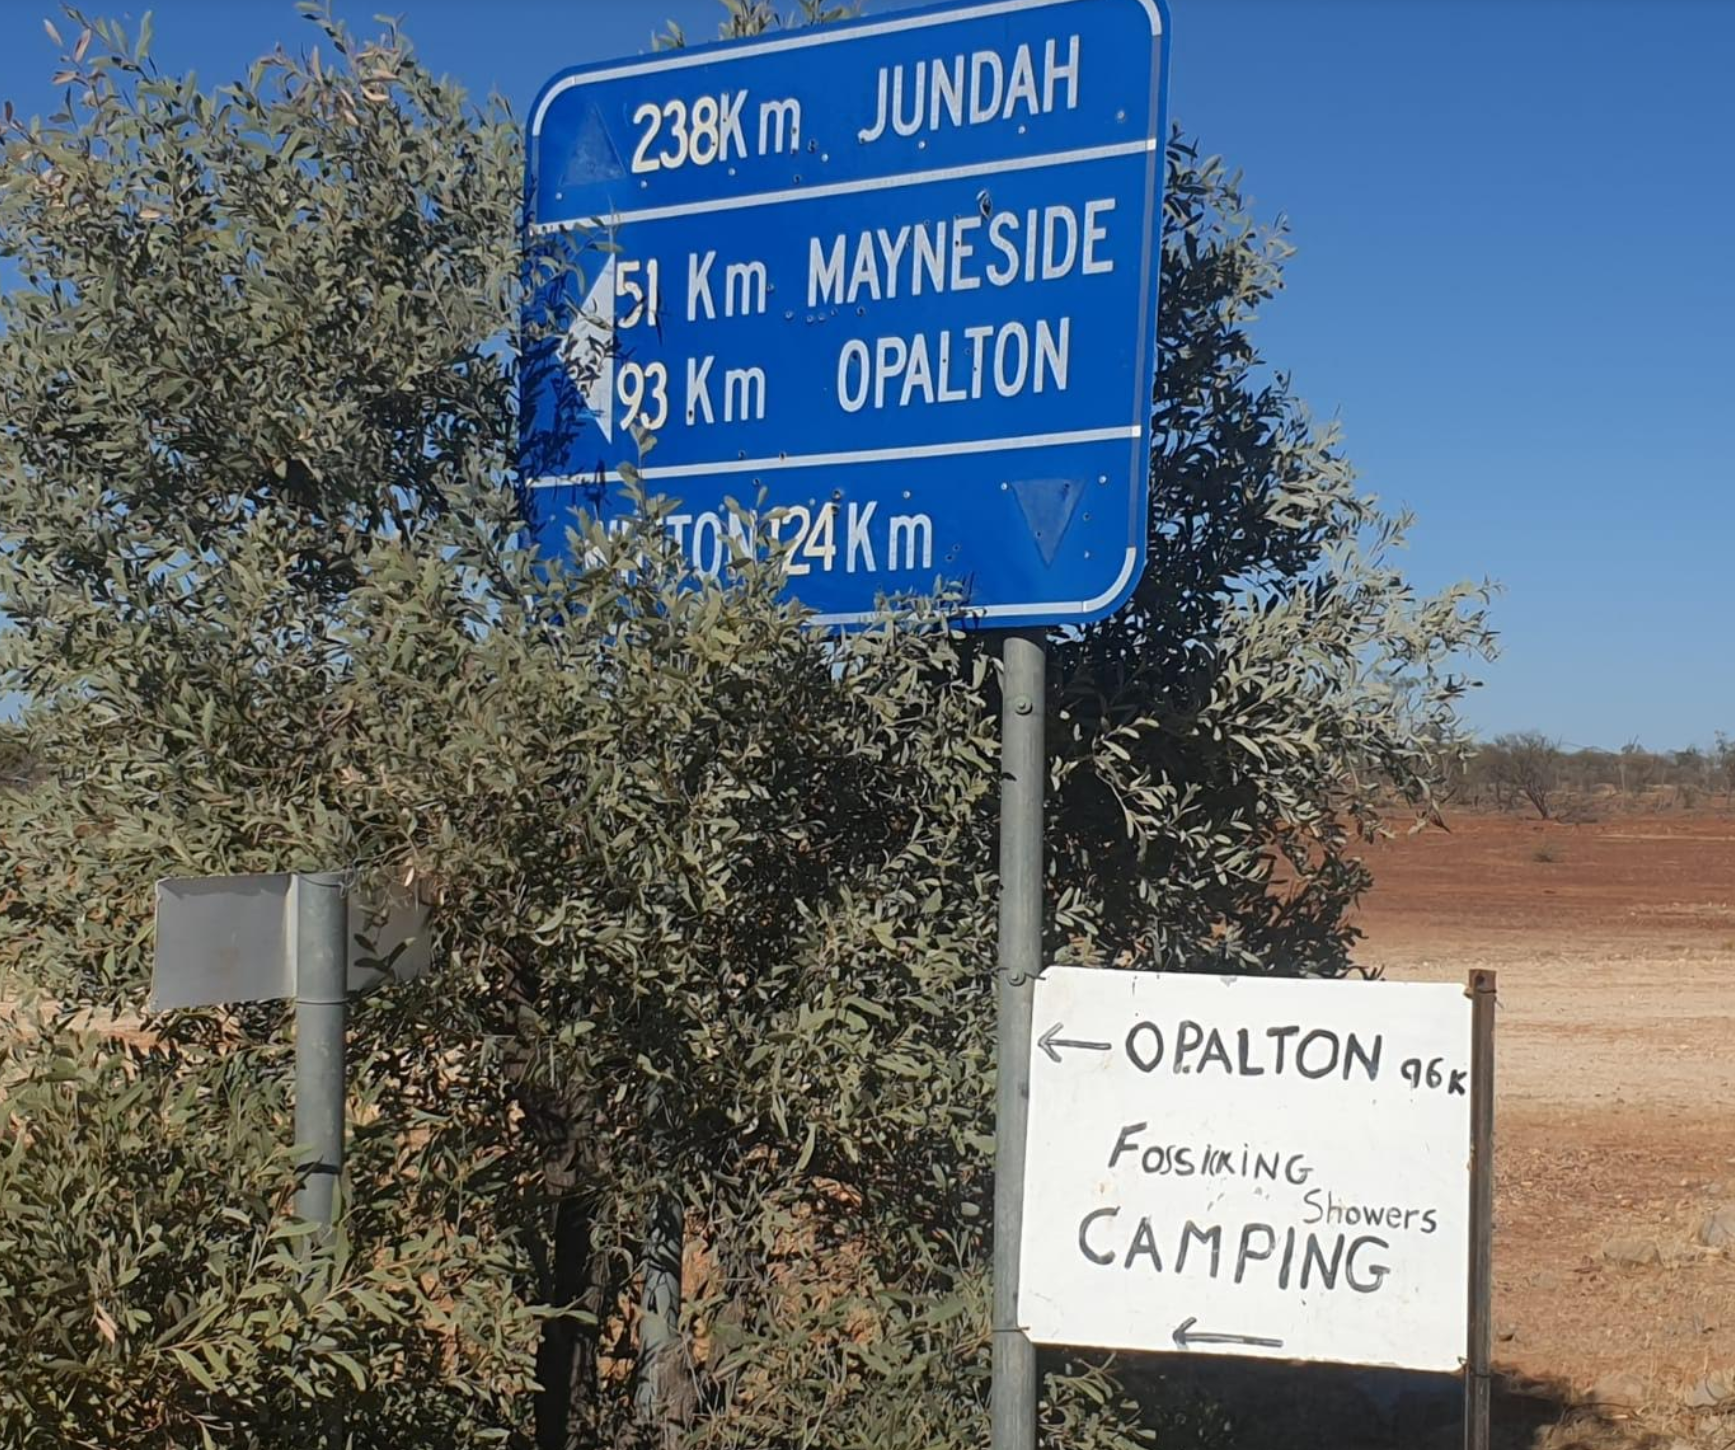 Boulder Opal Fields in Opalton Australia Jundah 